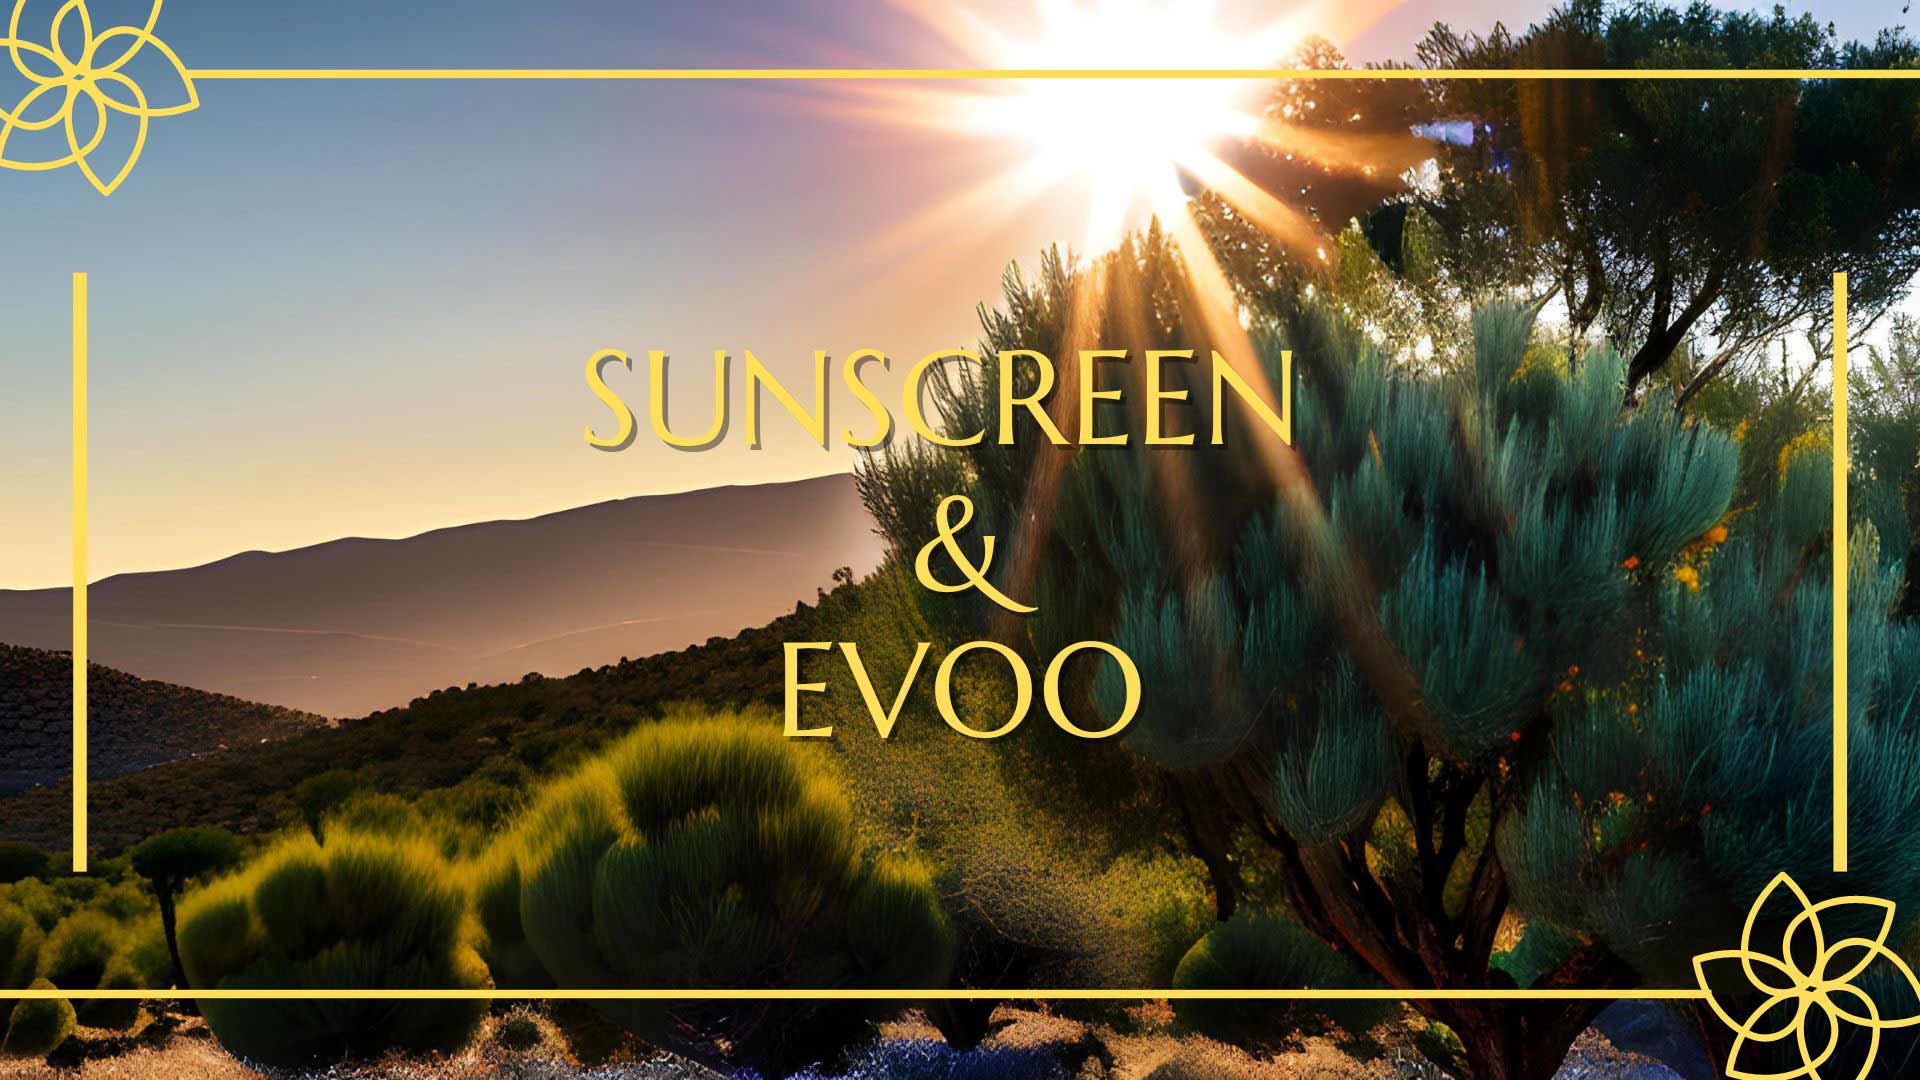 Sunscreen and EVOO?